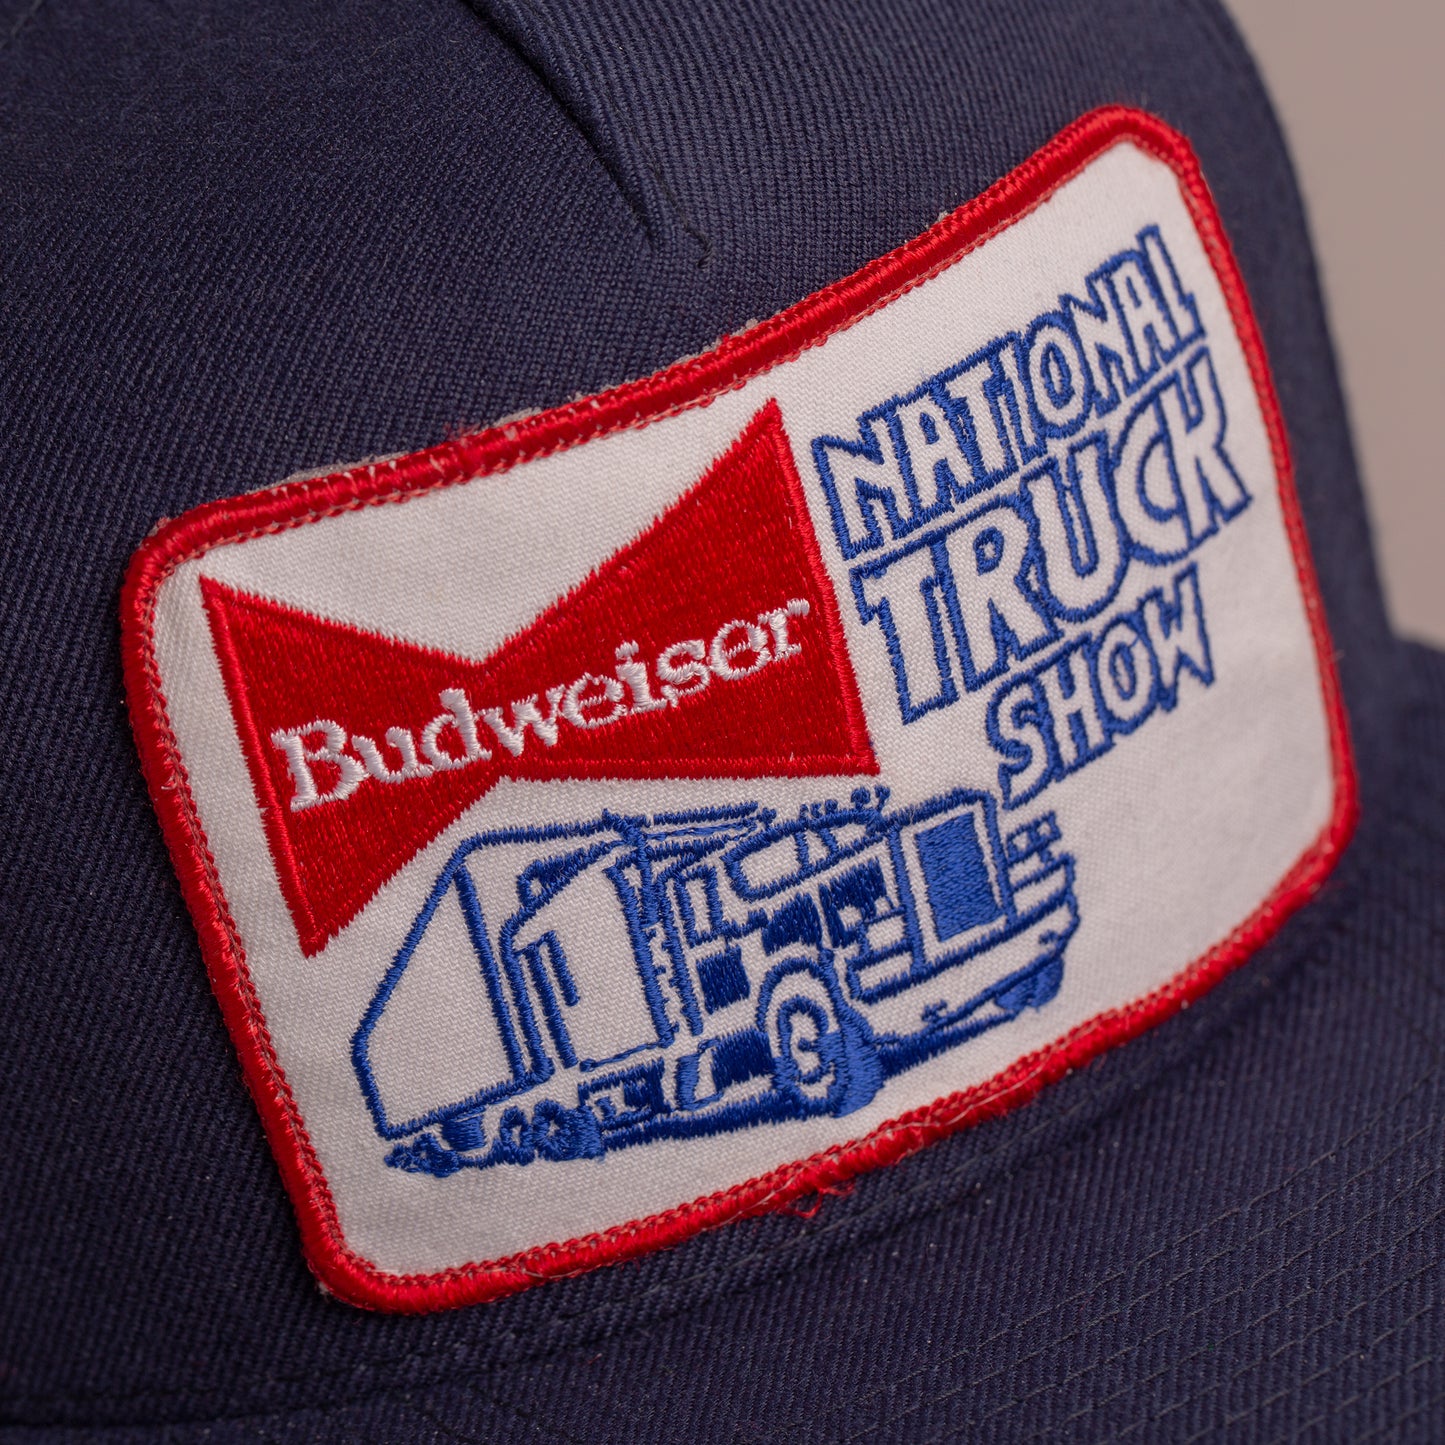 Budweiser National Truck Show